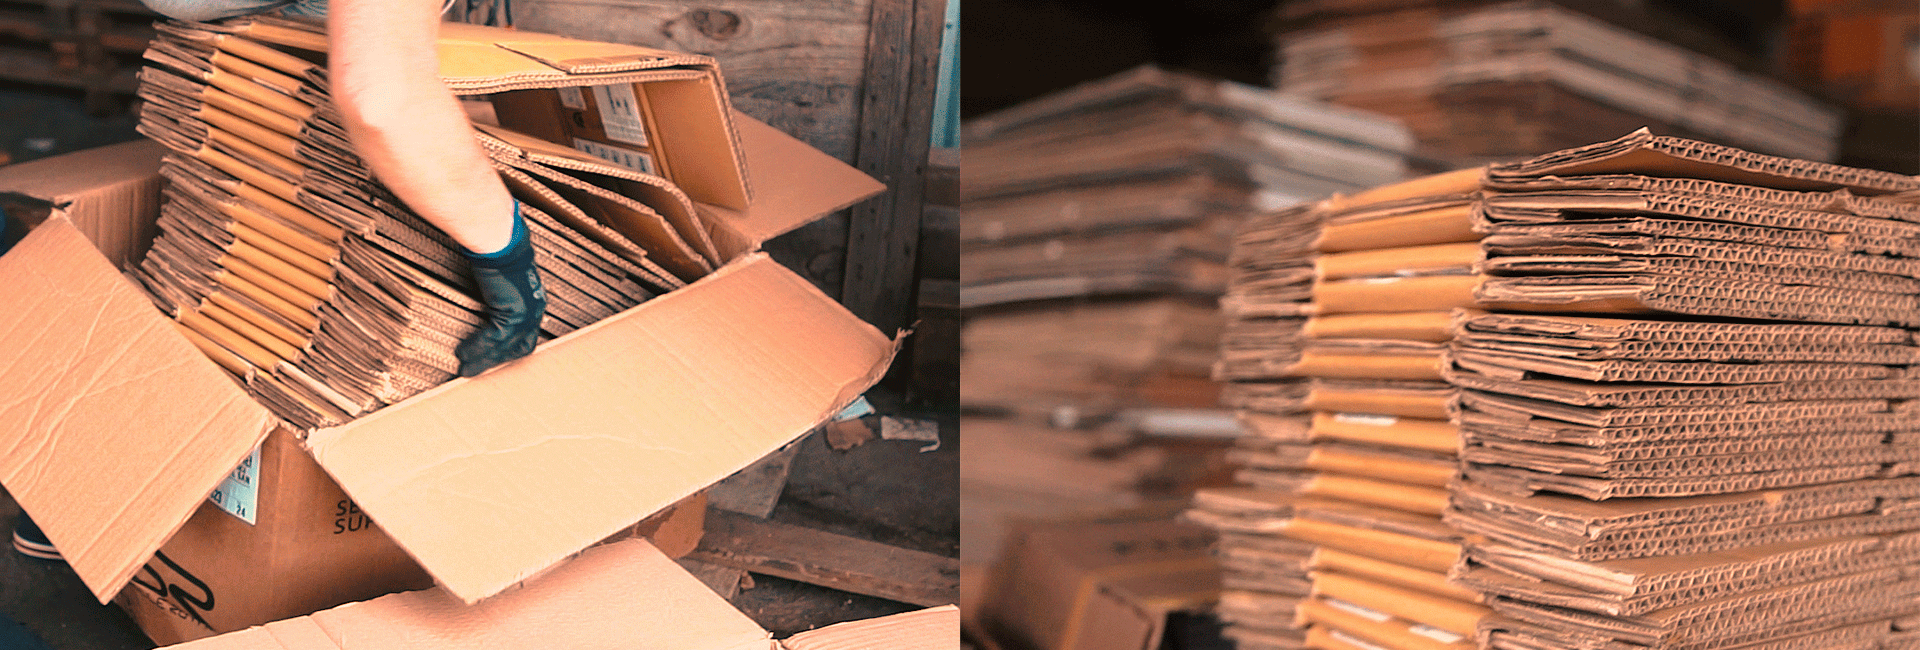 mag-caixas-feitas-de-papelao-reciclado